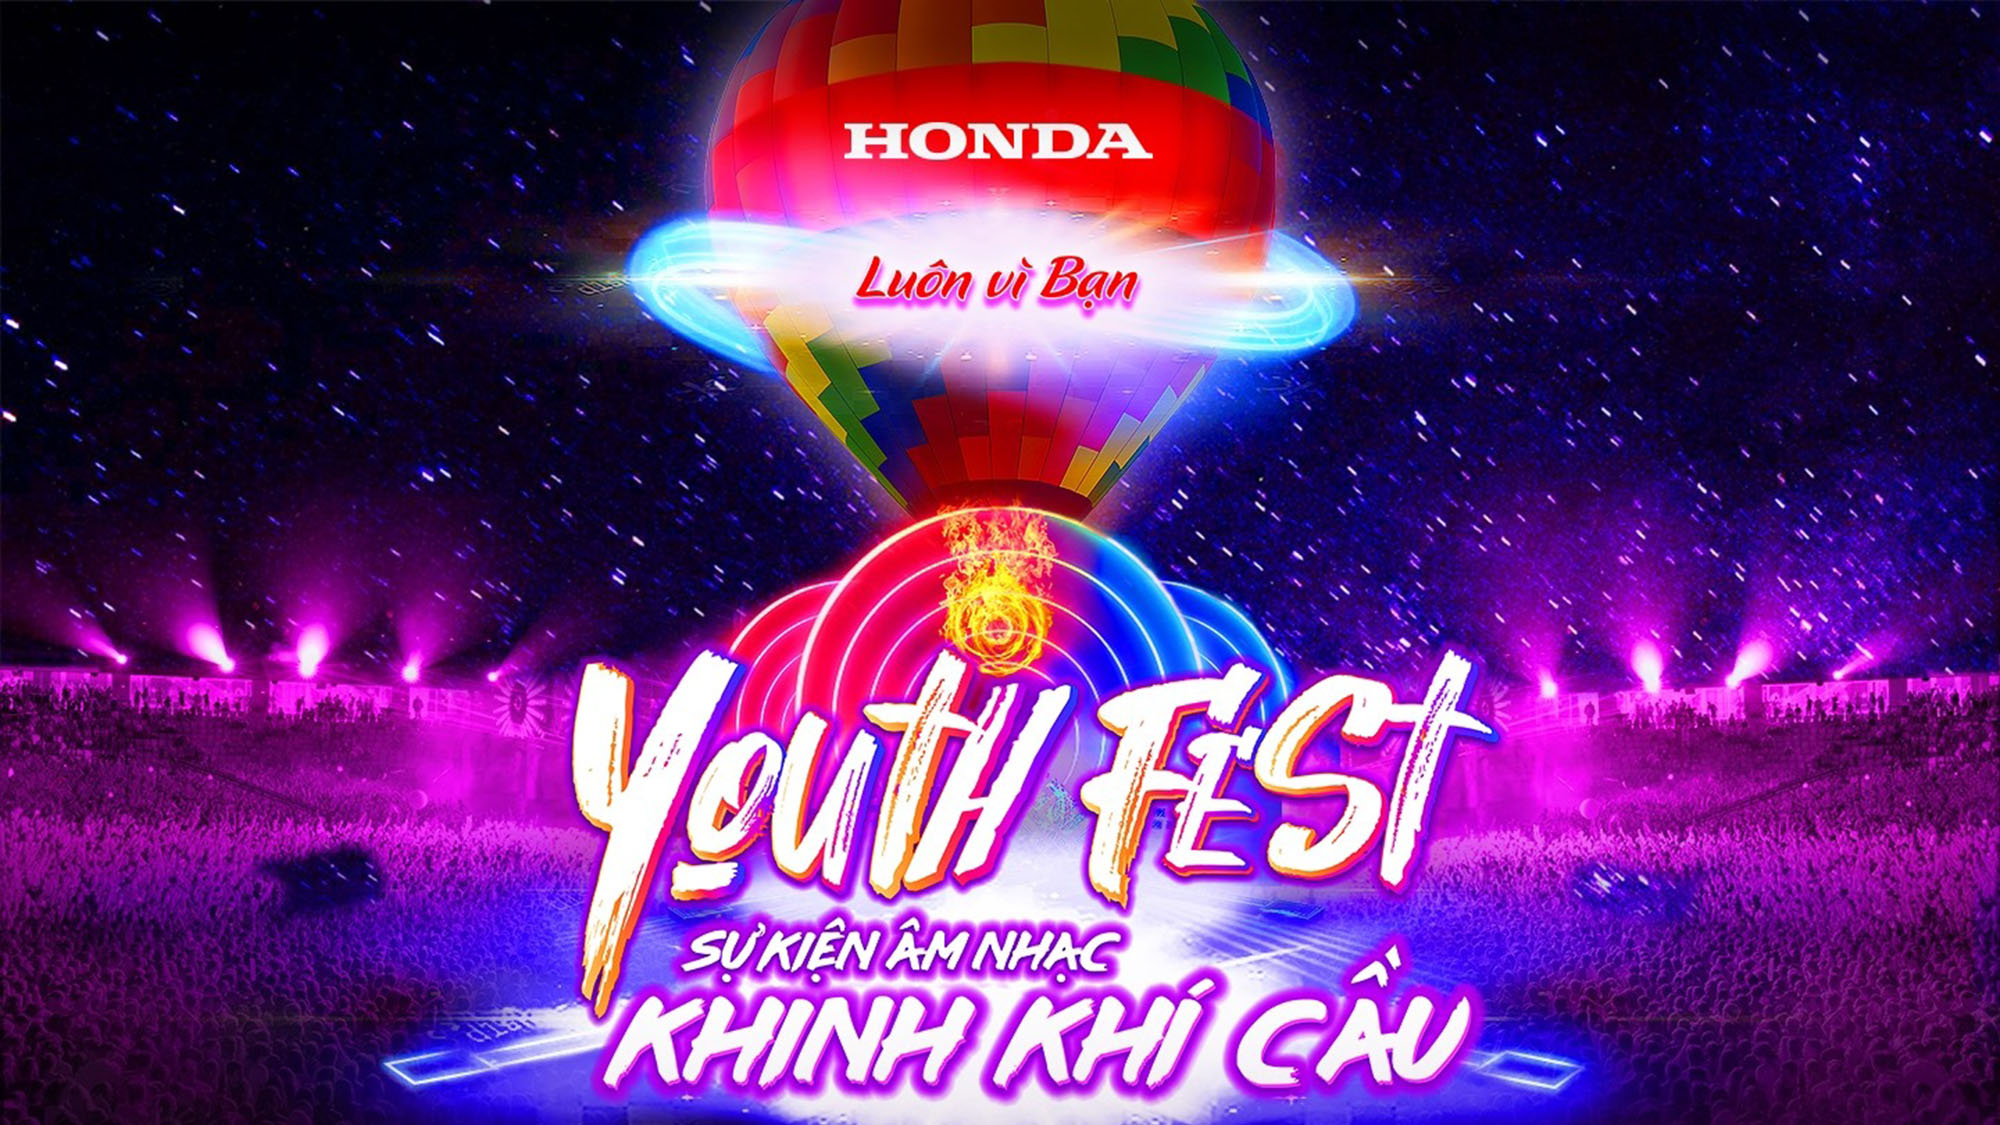 Honda Youth Fest – Luôn Vì Bạn